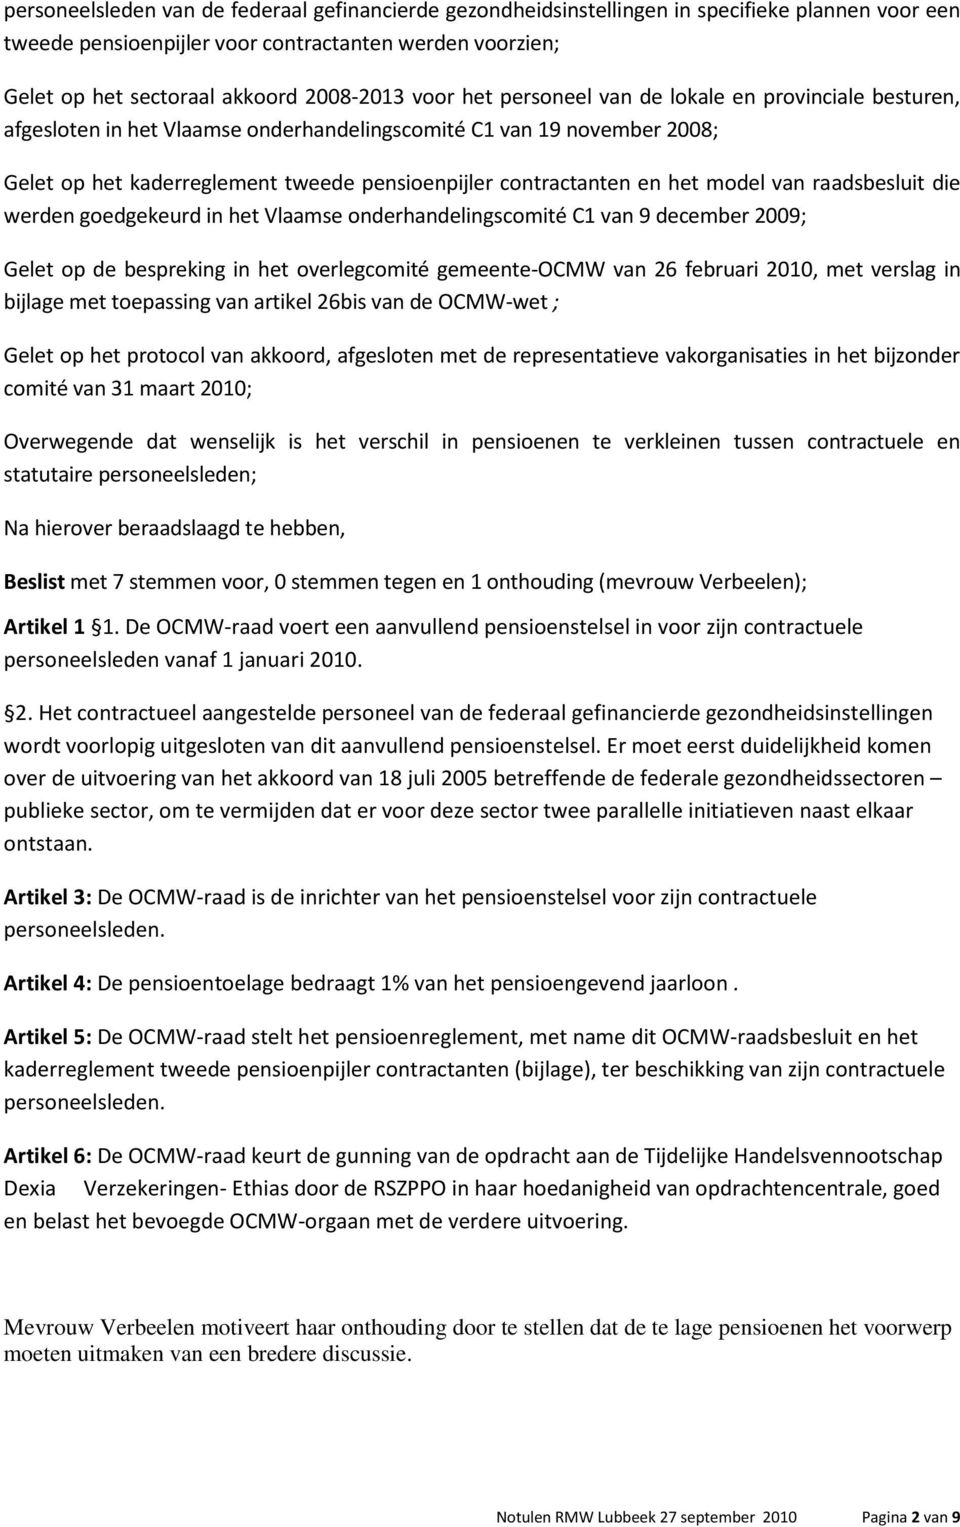 het model van raadsbesluit die werden goedgekeurd in het Vlaamse onderhandelingscomité C1 van 9 december 2009; Gelet op de bespreking in het overlegcomité gemeente-ocmw van 26 februari 2010, met